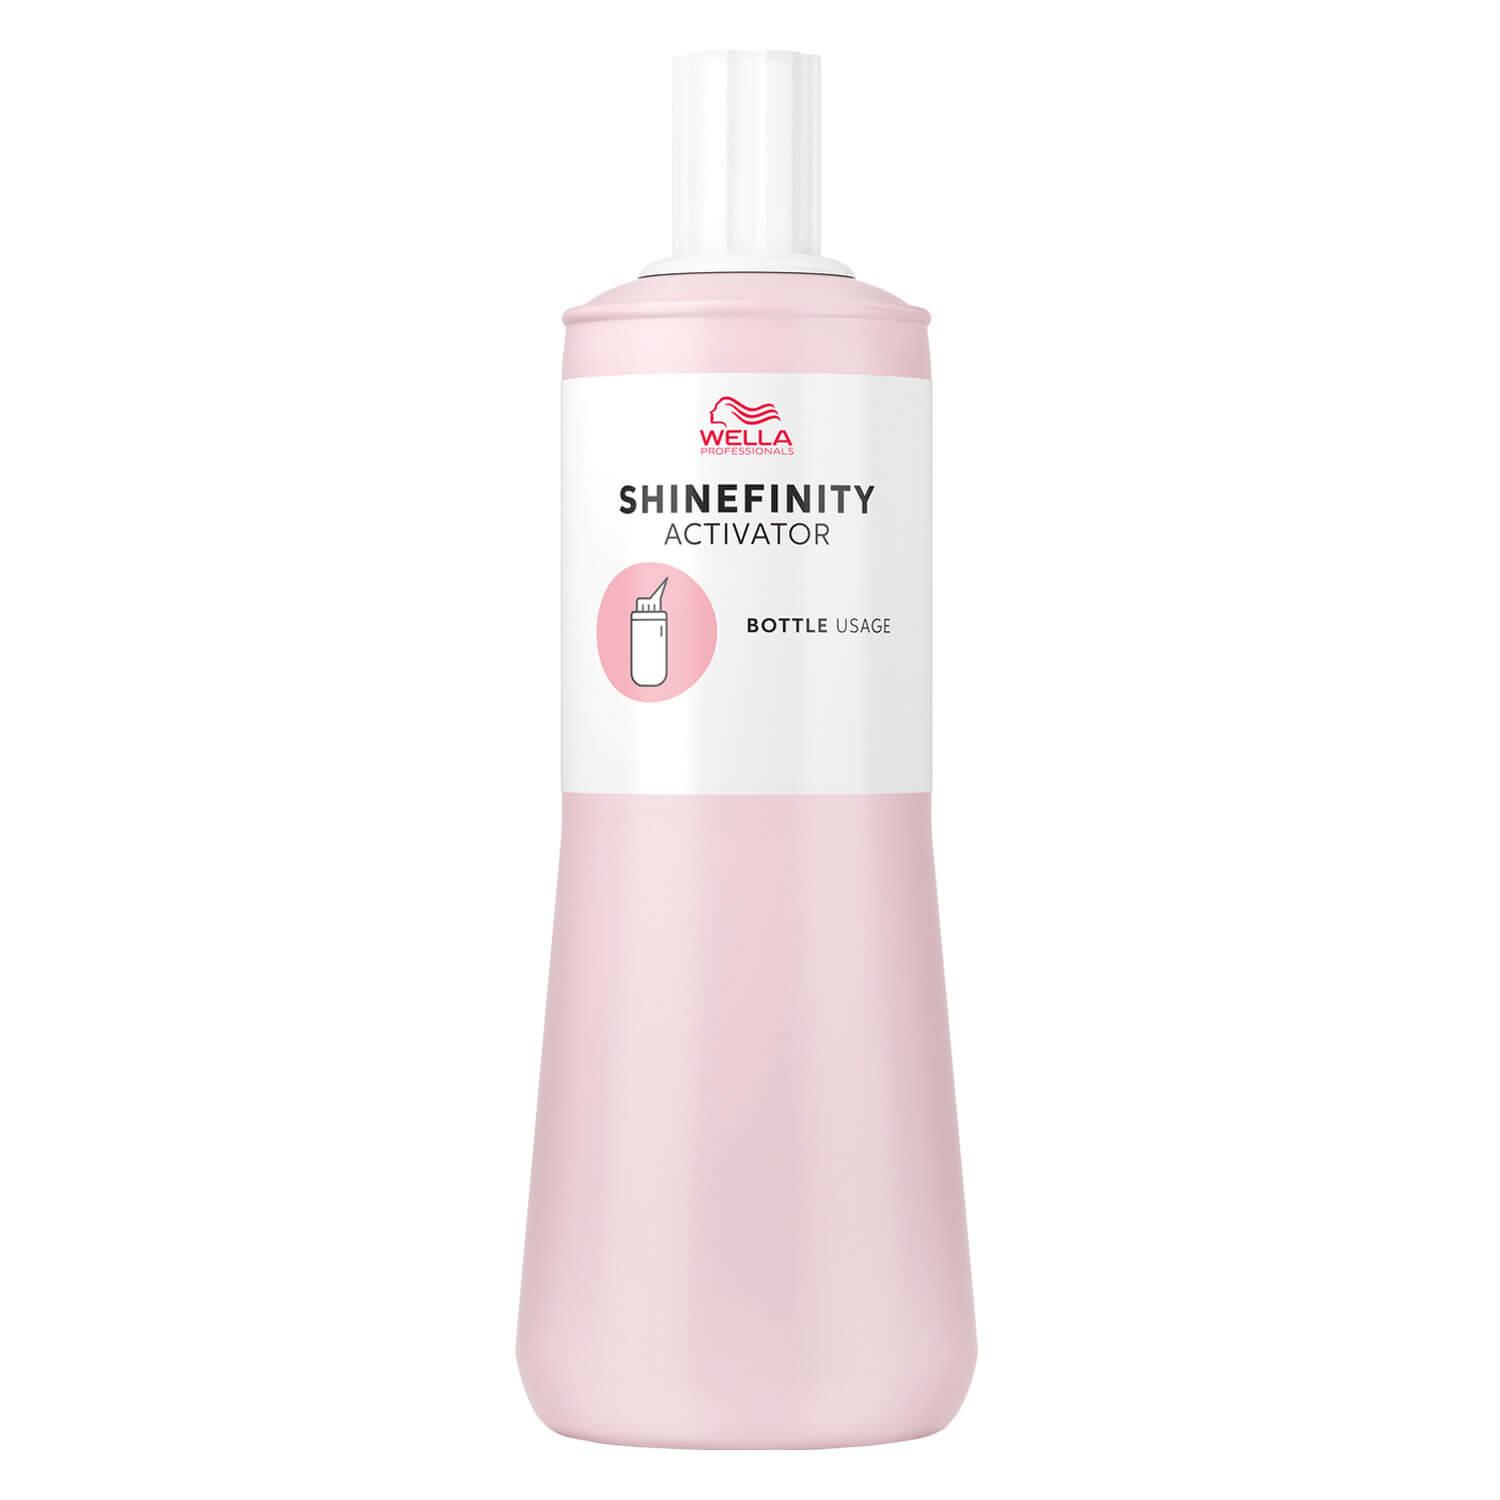 Shinefinity - Activator Bottle Usage 2%